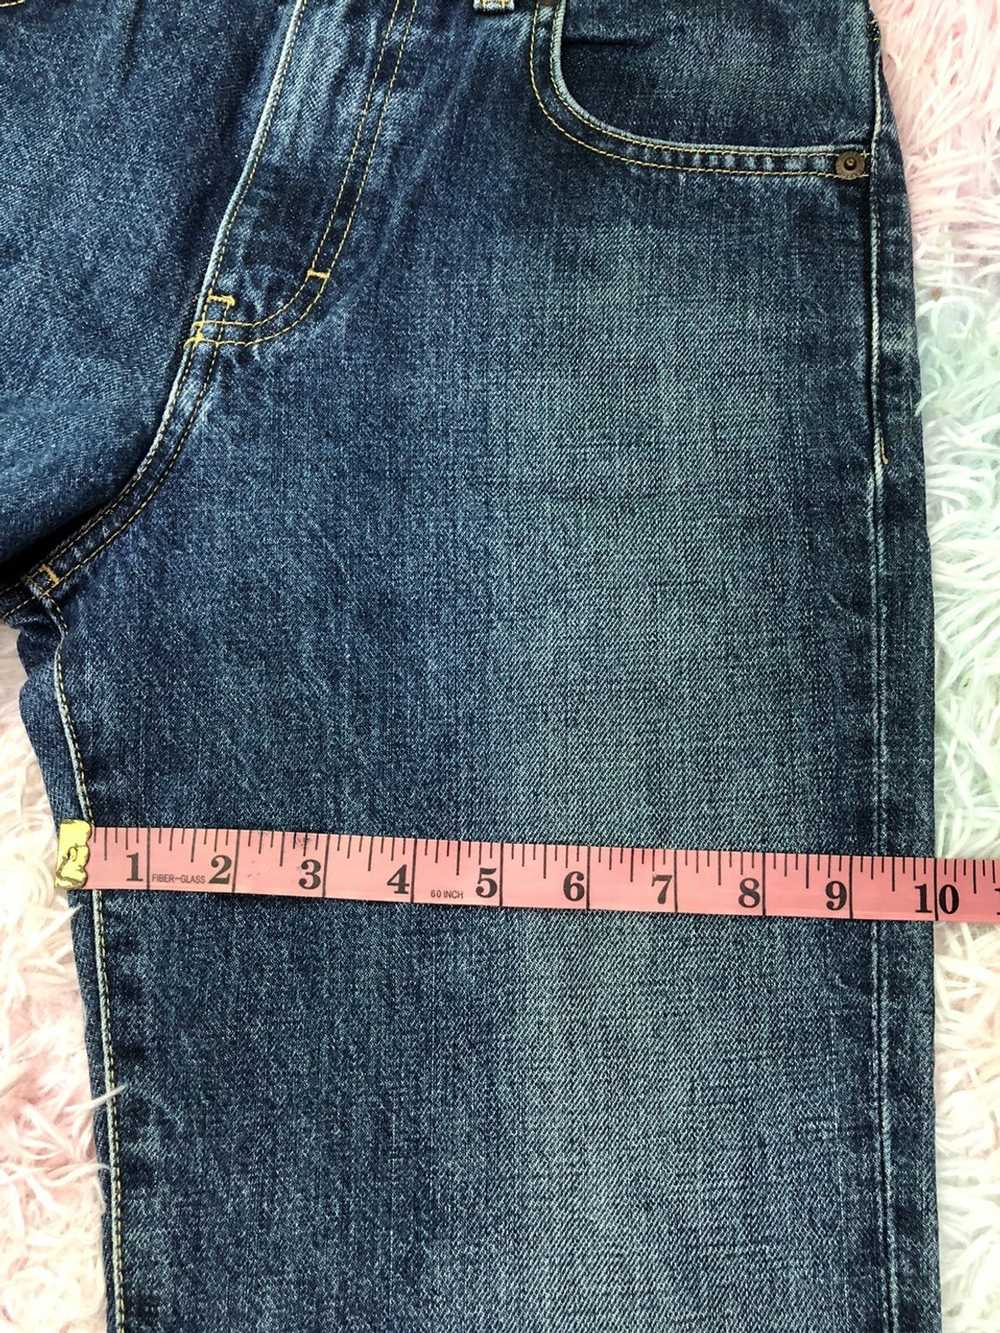 Calvin Klein Calvin Klein denim jeans - image 12